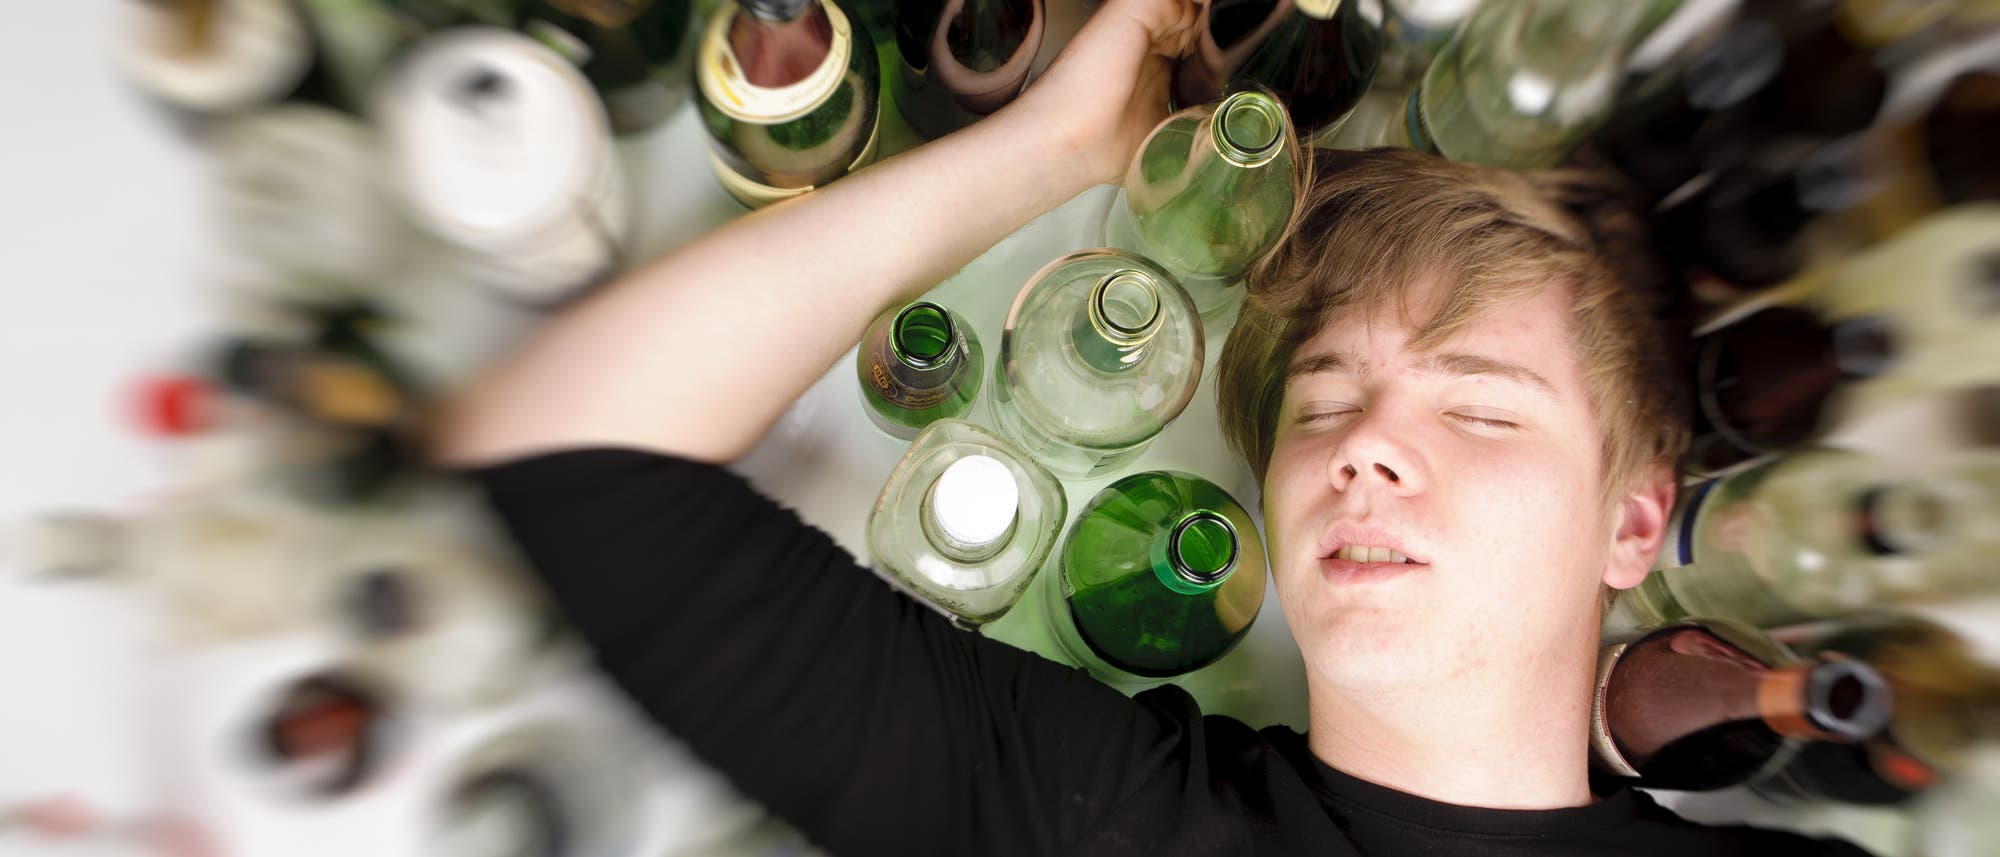 Ein männlicher Jugendlicher liegt im Alkoholrausch schlafend neben vielen leeren Flaschen auf dem Boden.